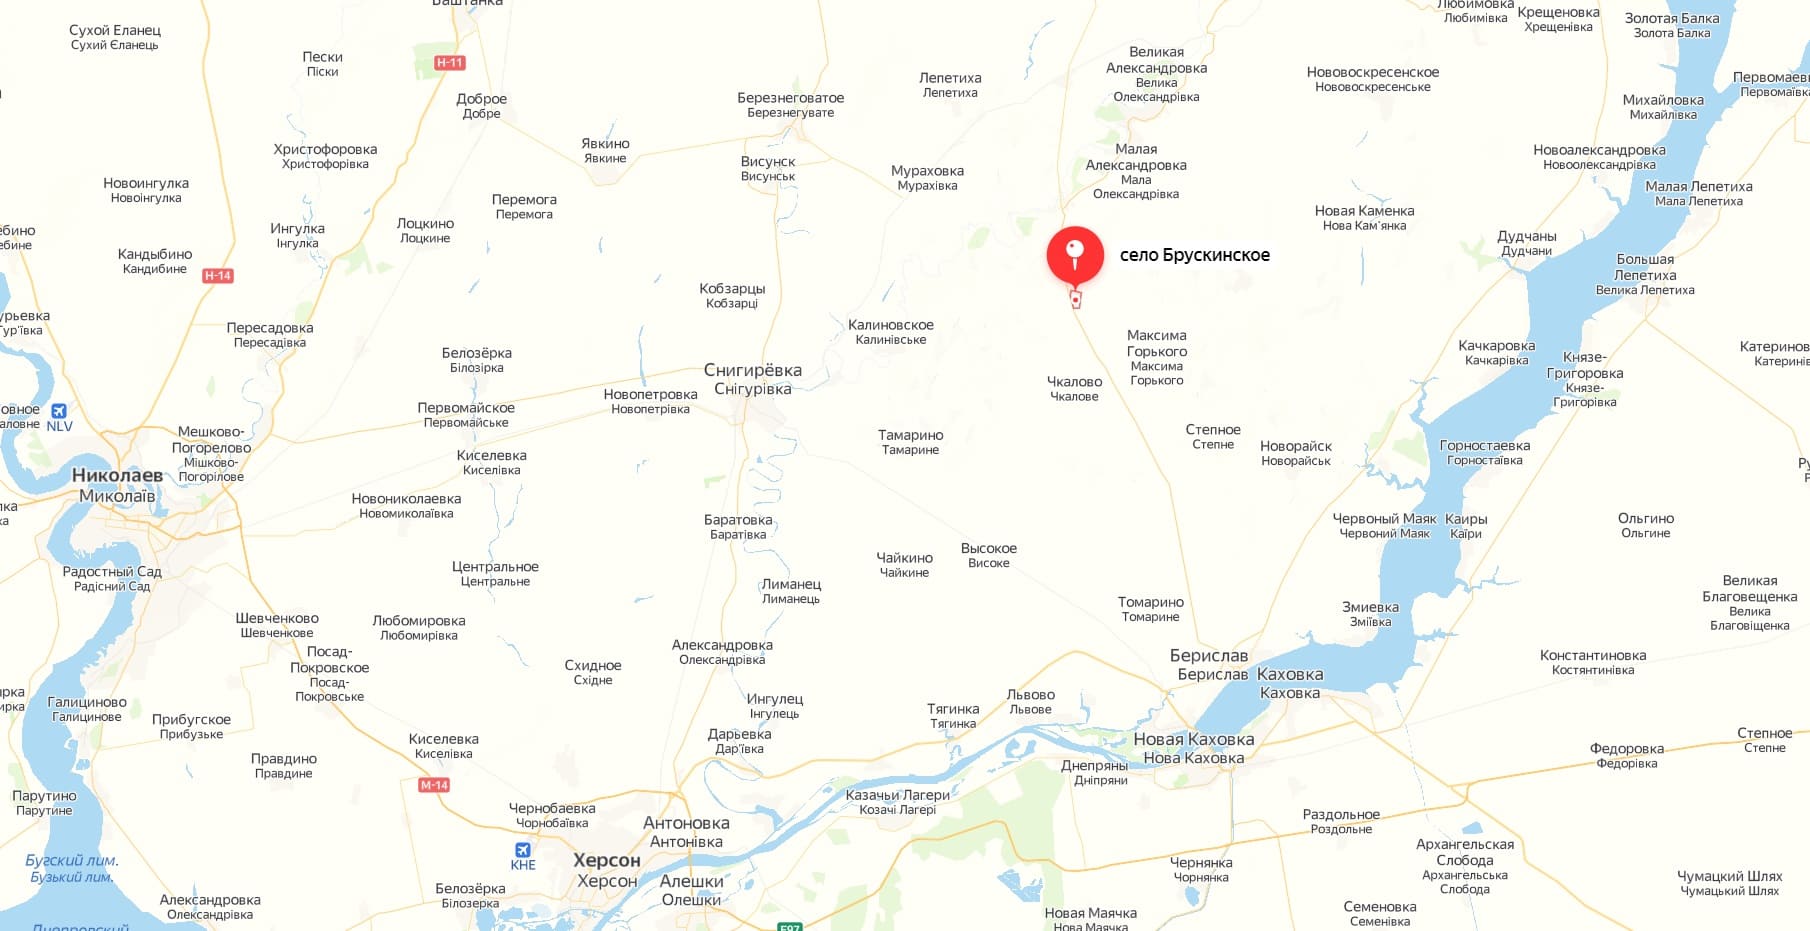 Крынки украина херсонская область показать на карте. Херсонская область на карте. Херсонская область на карте Украины. Карта Украины Херсонская область на карте. Антоновка Херсонская область на карте.